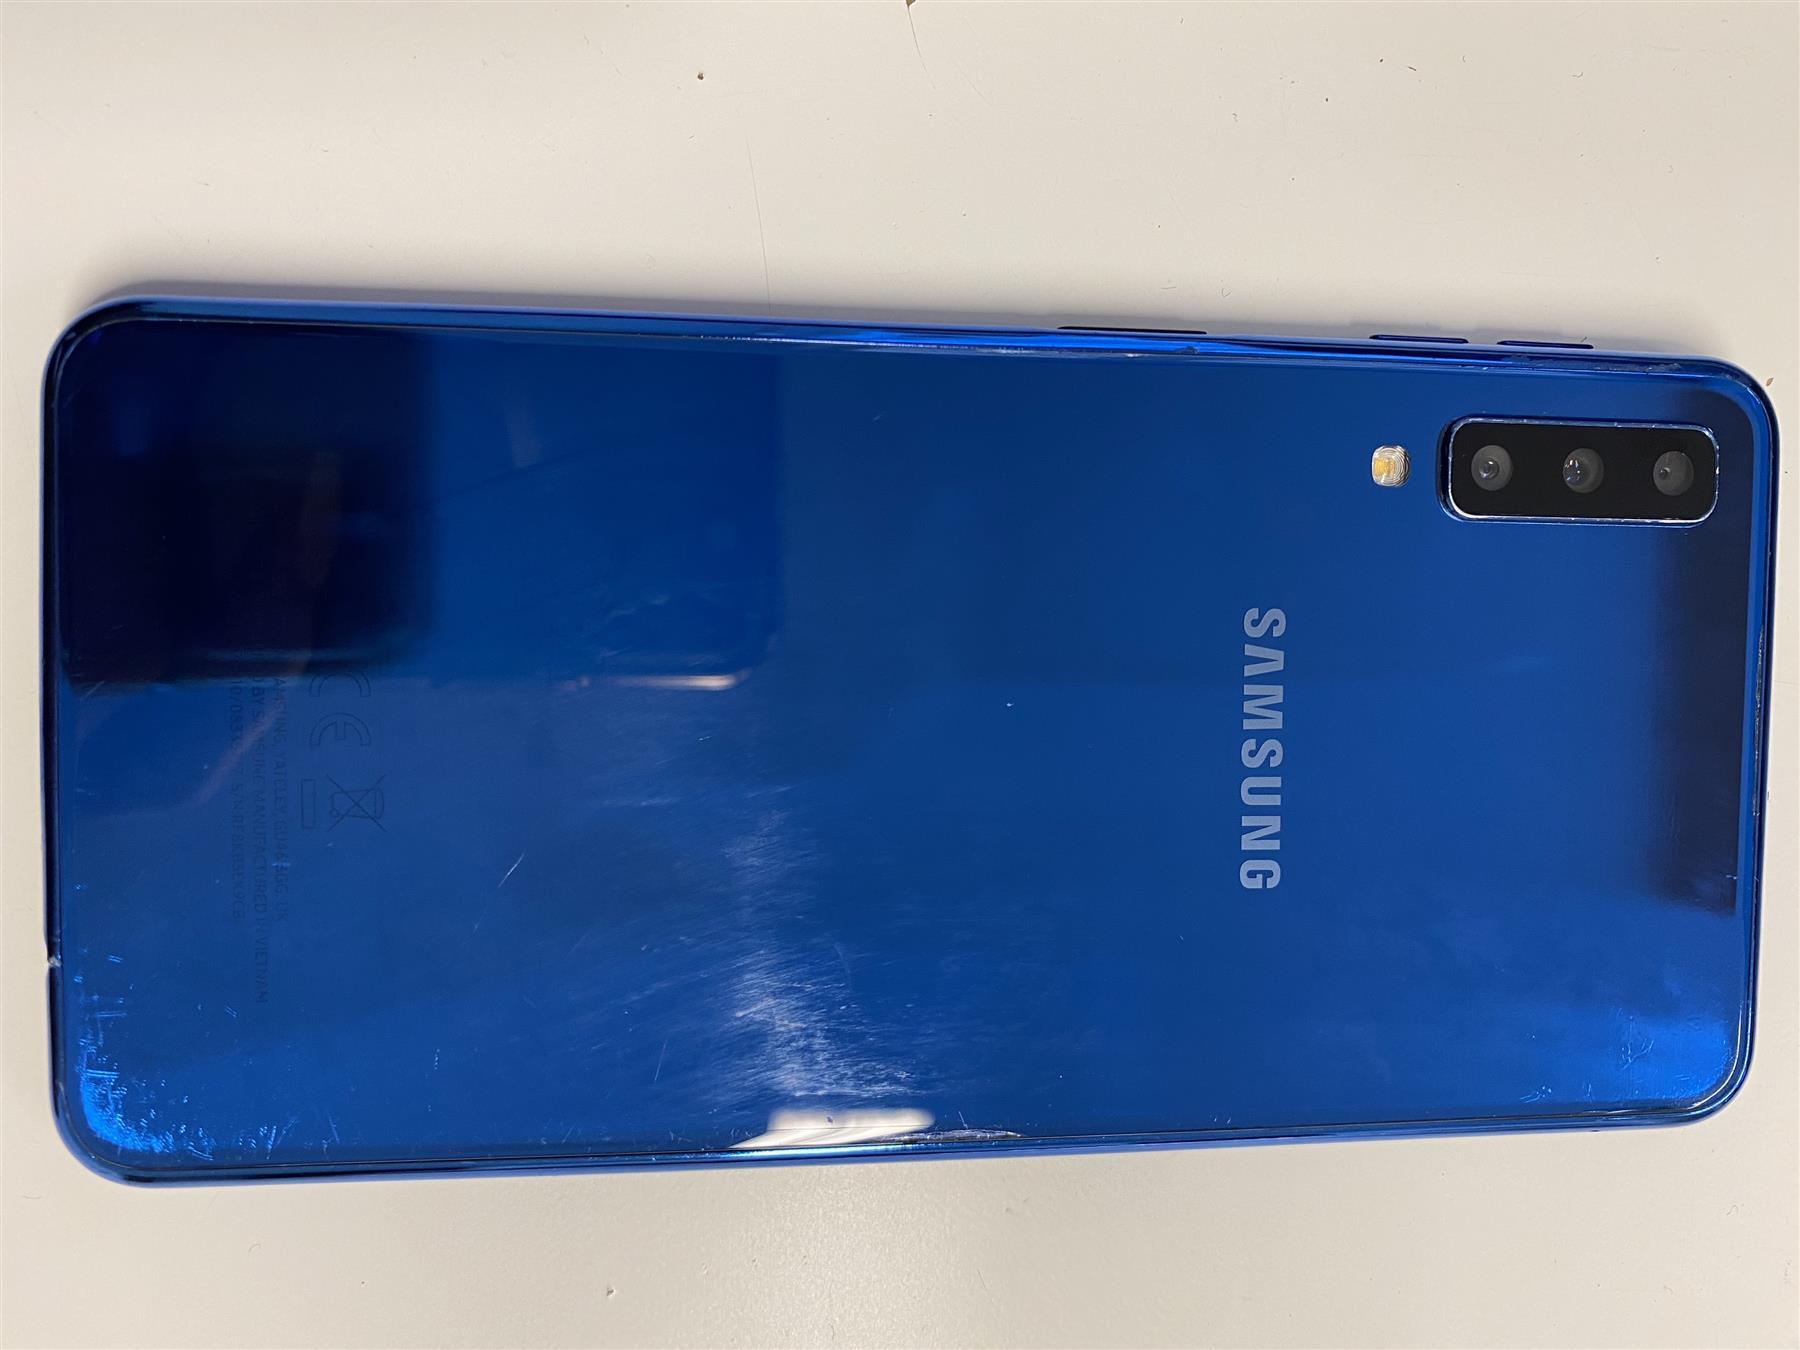 Samsung Galaxy A7 (2018) 64GB Blue Unlocked - Used